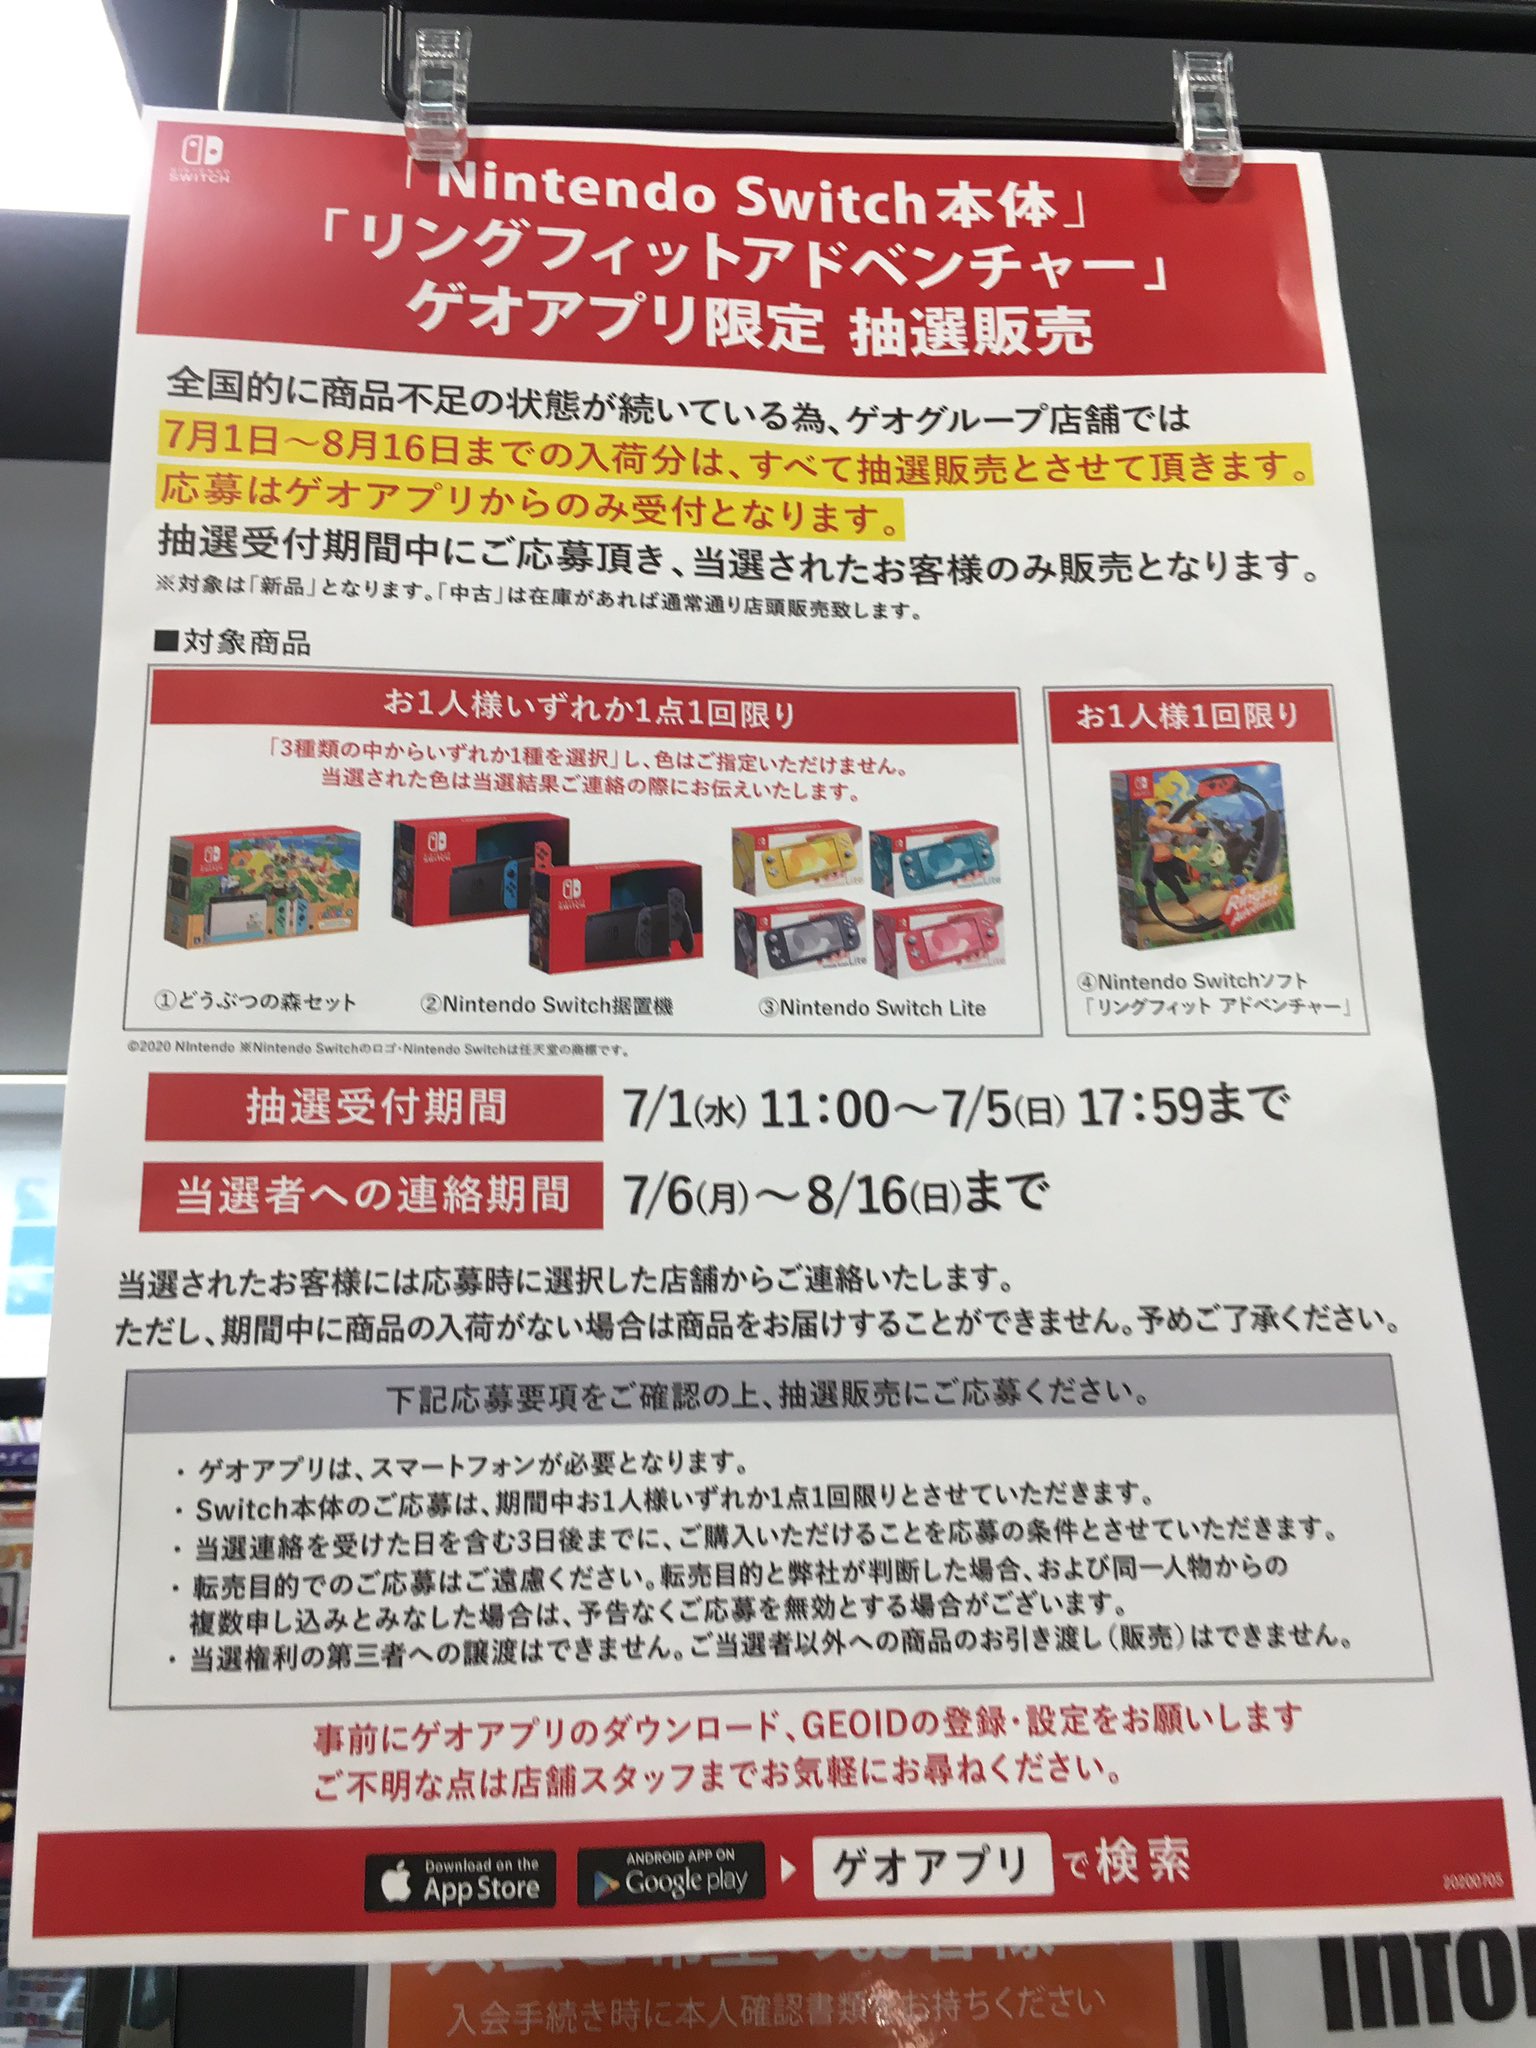 7月1日 11 00よりゲオアプリにて Nintendo Switch 本体各種 リングフィット アドベンチャー の抽選販売の受付が開始